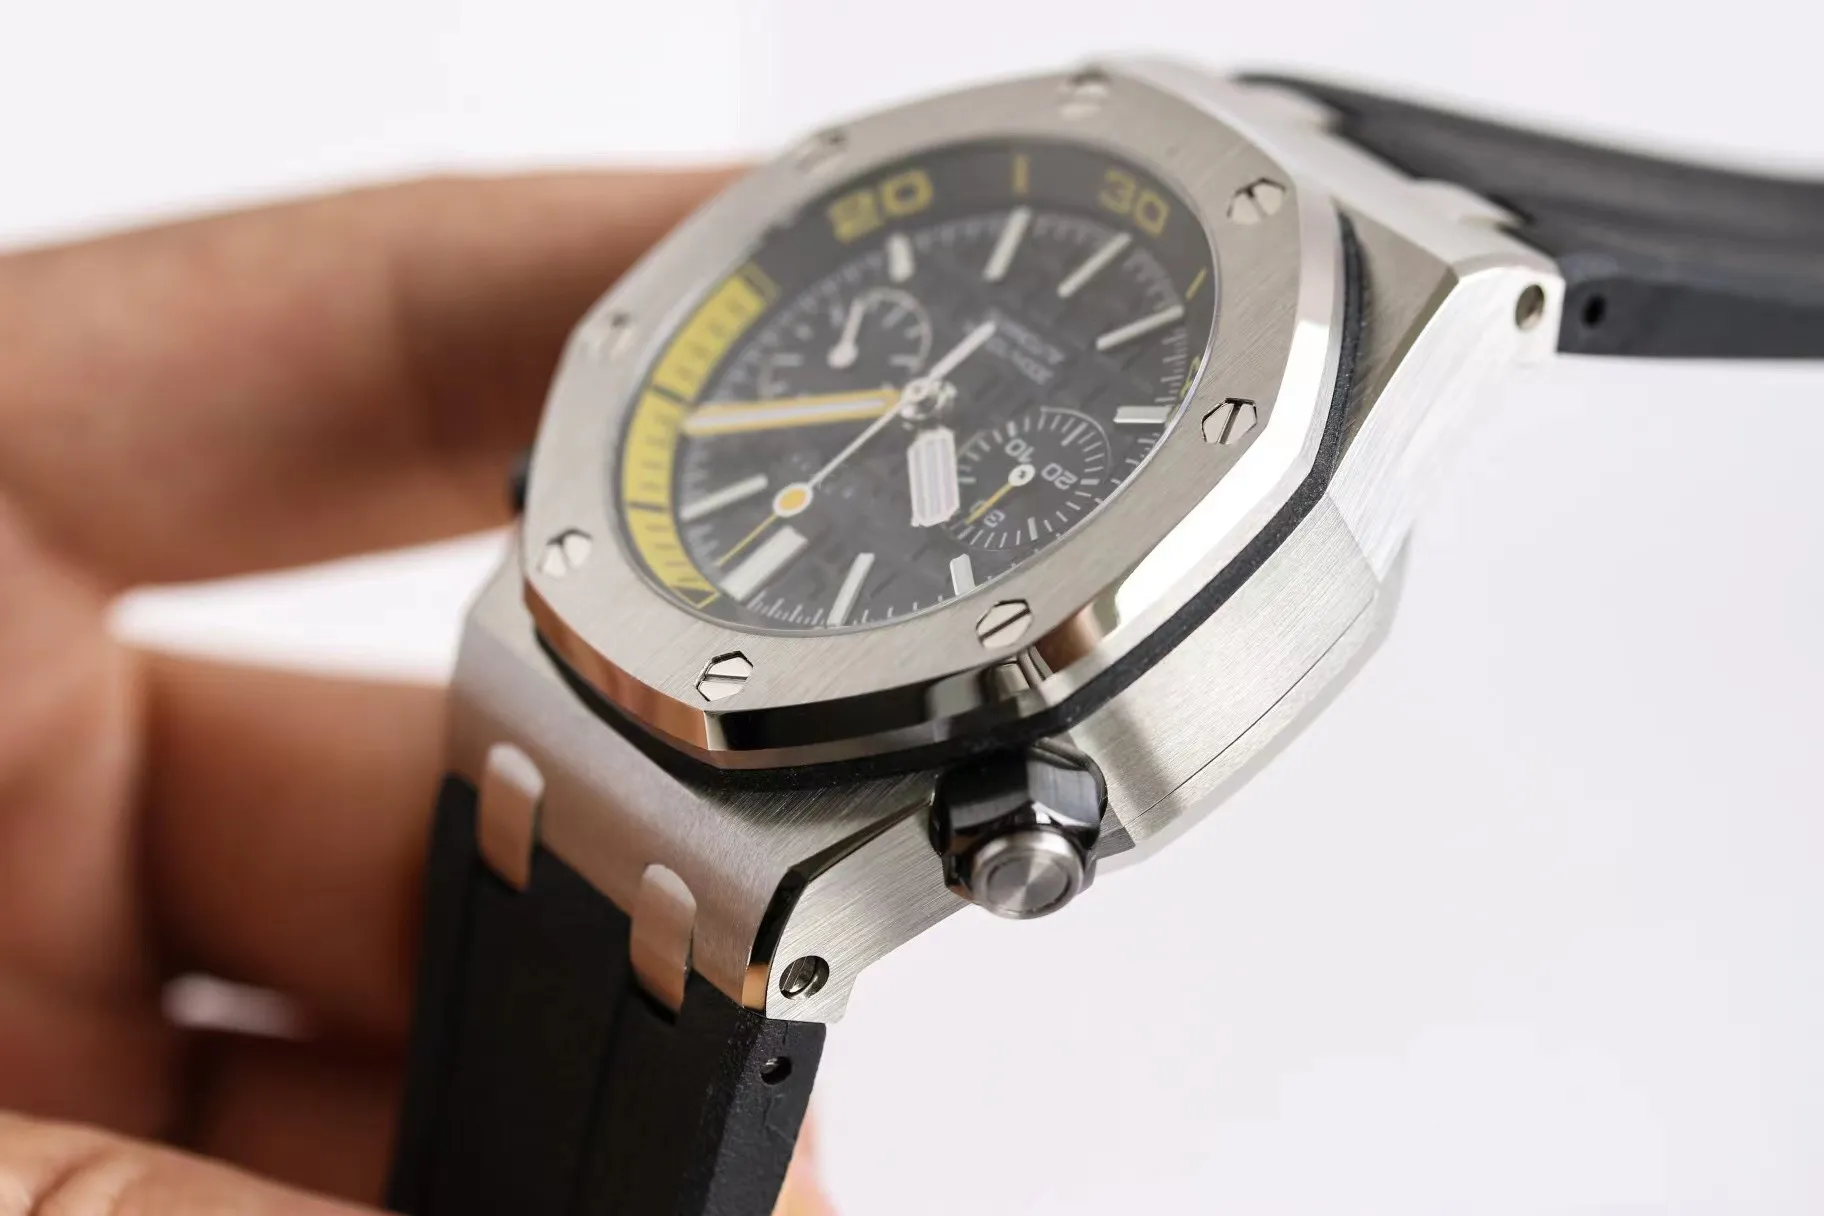 Audemar Piquet Uhr JF 26703 Automatische mechanische Herrenuhr mit Zeitmessung, Größe 42 mm, ausgestattet mit Uhrwerk Cal.3124, CNC-Schmiede-Drahtziehverfahren, Poliergehäuse